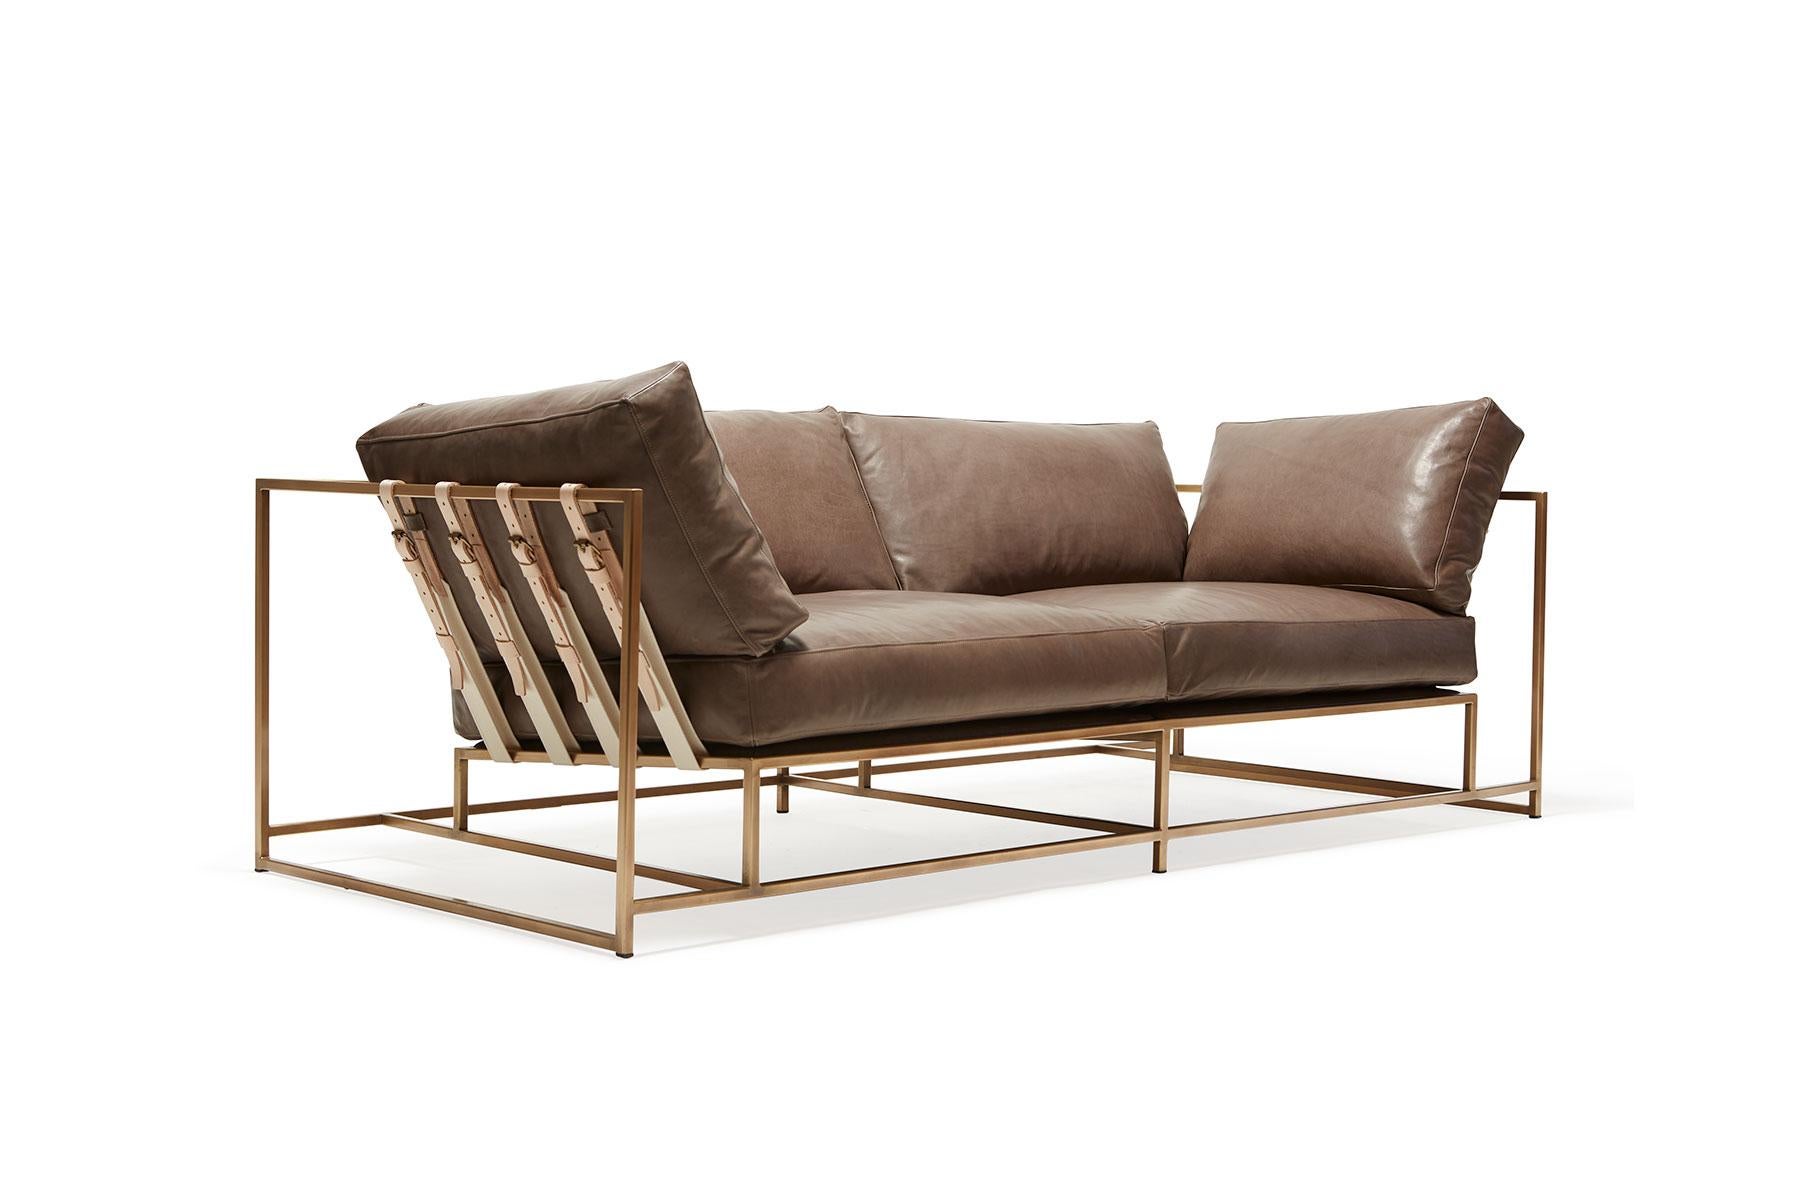 
Das Inheritance Two Seat Sofa von Stephen Kenn ist ebenso bequem wie einzigartig. Das Design zeichnet sich durch eine exponierte Konstruktion aus, die aus drei Elementen besteht - einem Stahlrahmen, einer weichen Polsterung und stützenden Gurten.